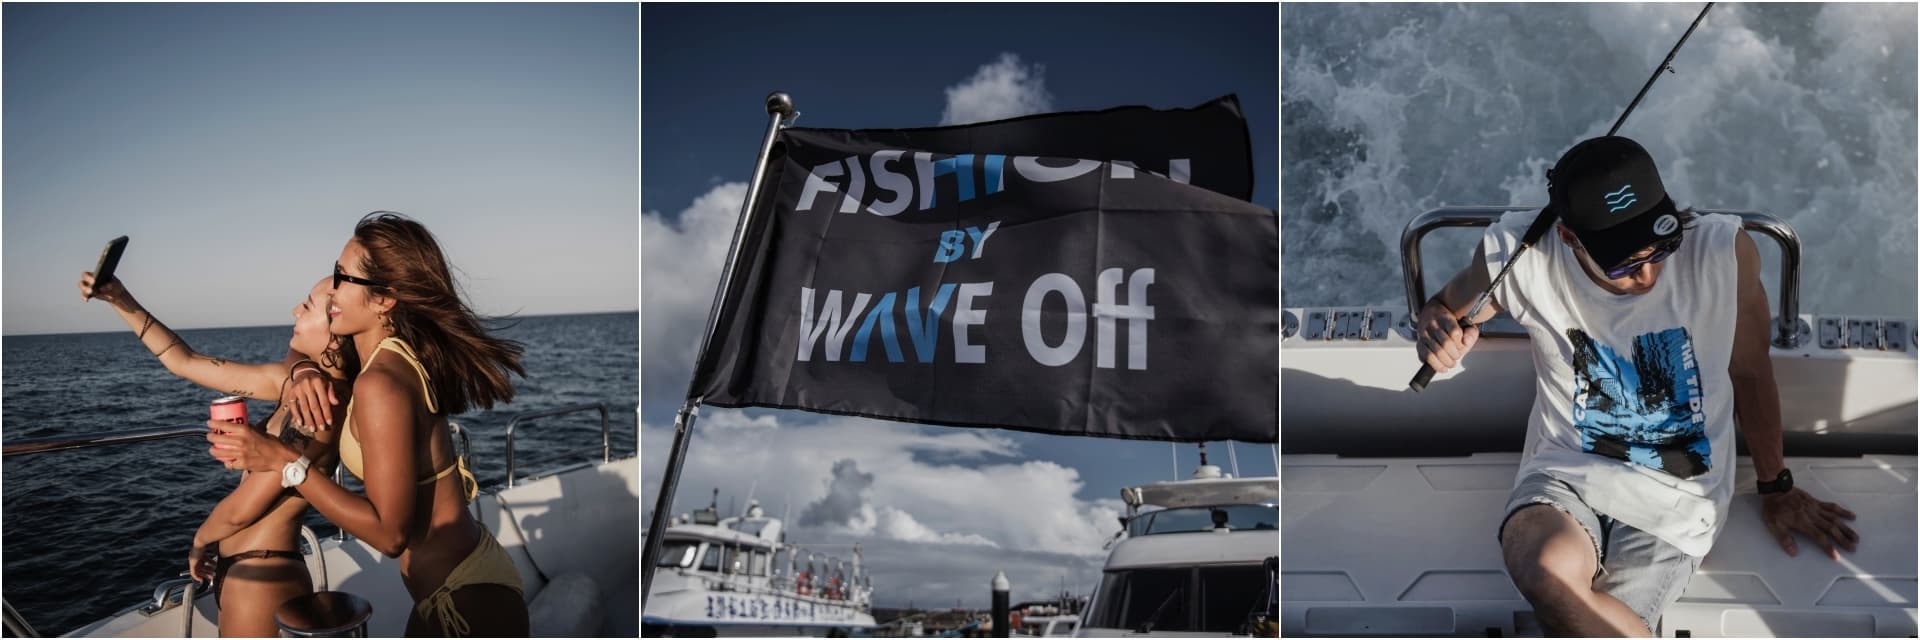 ​​Fishion on my way：城市生活第 101 種方式，Wave Off 打破浪潮與街頭的交界！